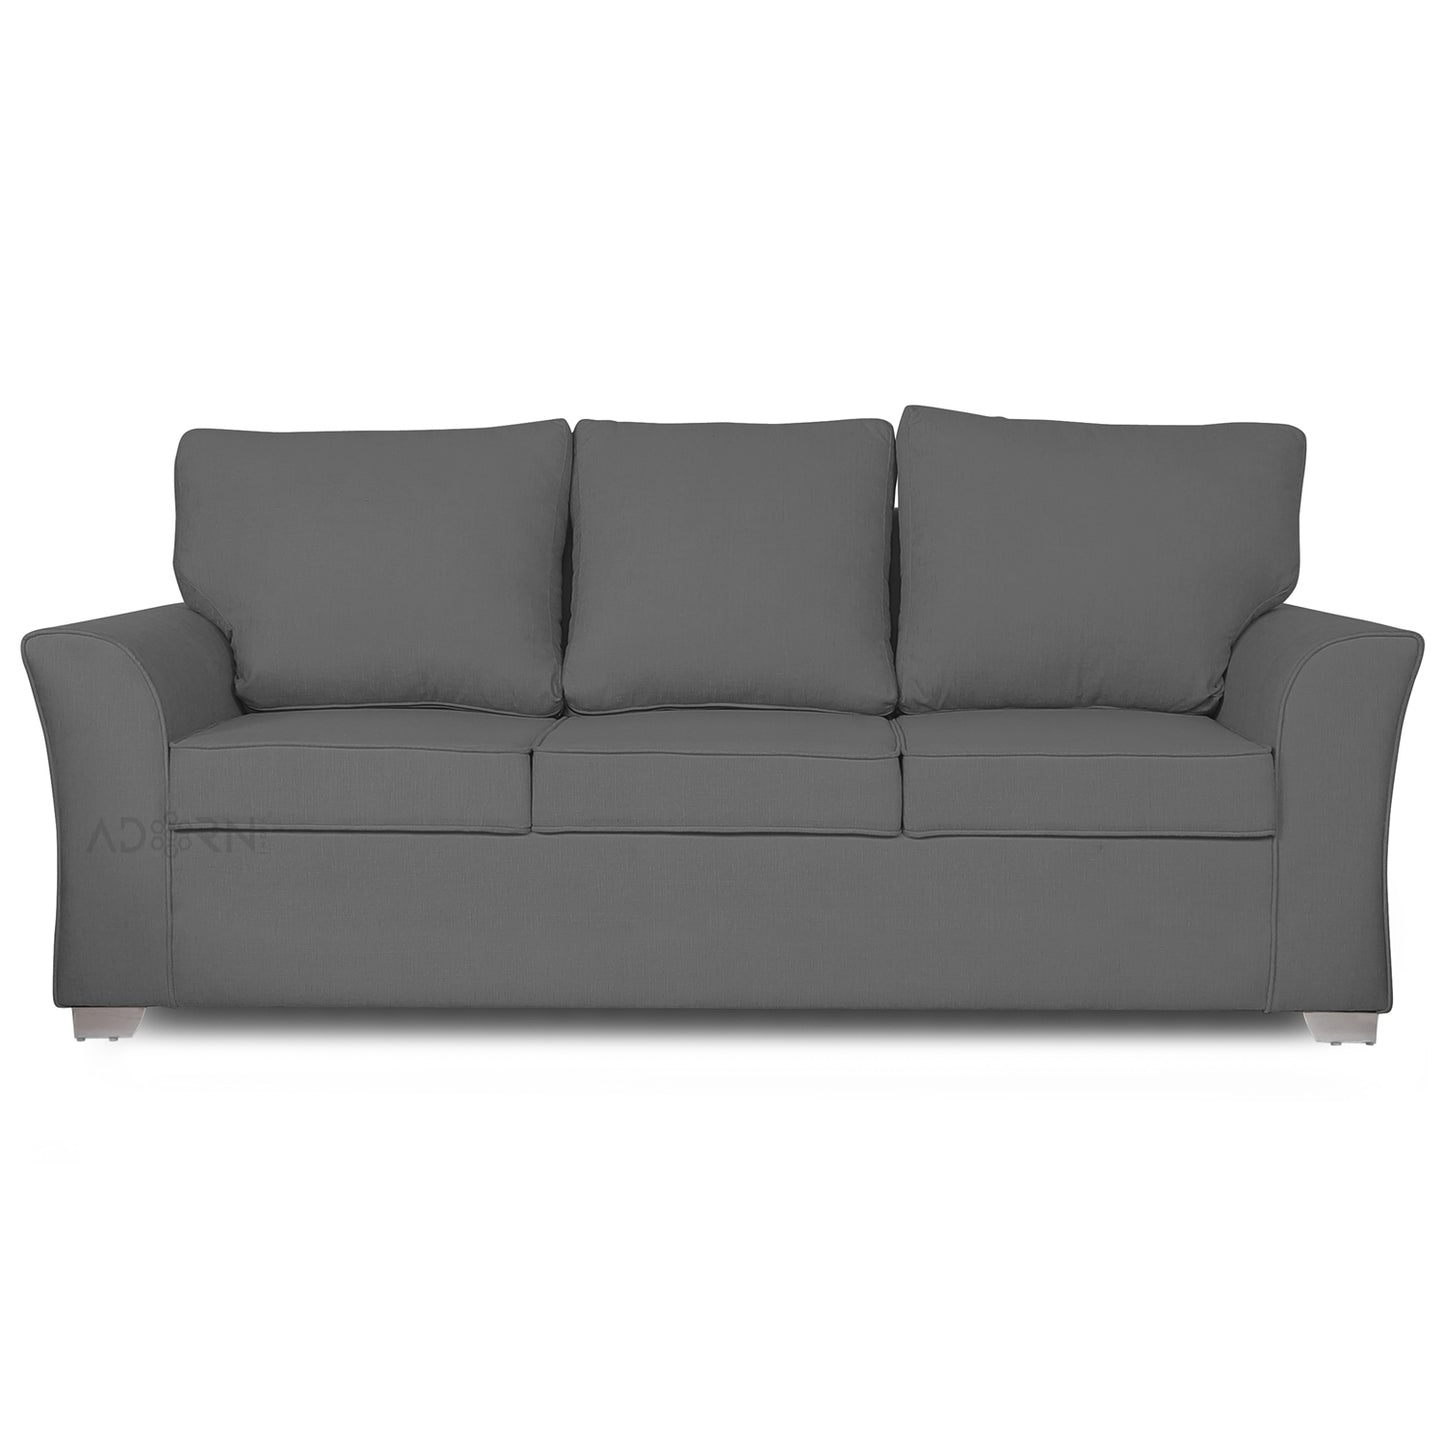 Adorn India Alexia 3 Seater Sofa (Grey)